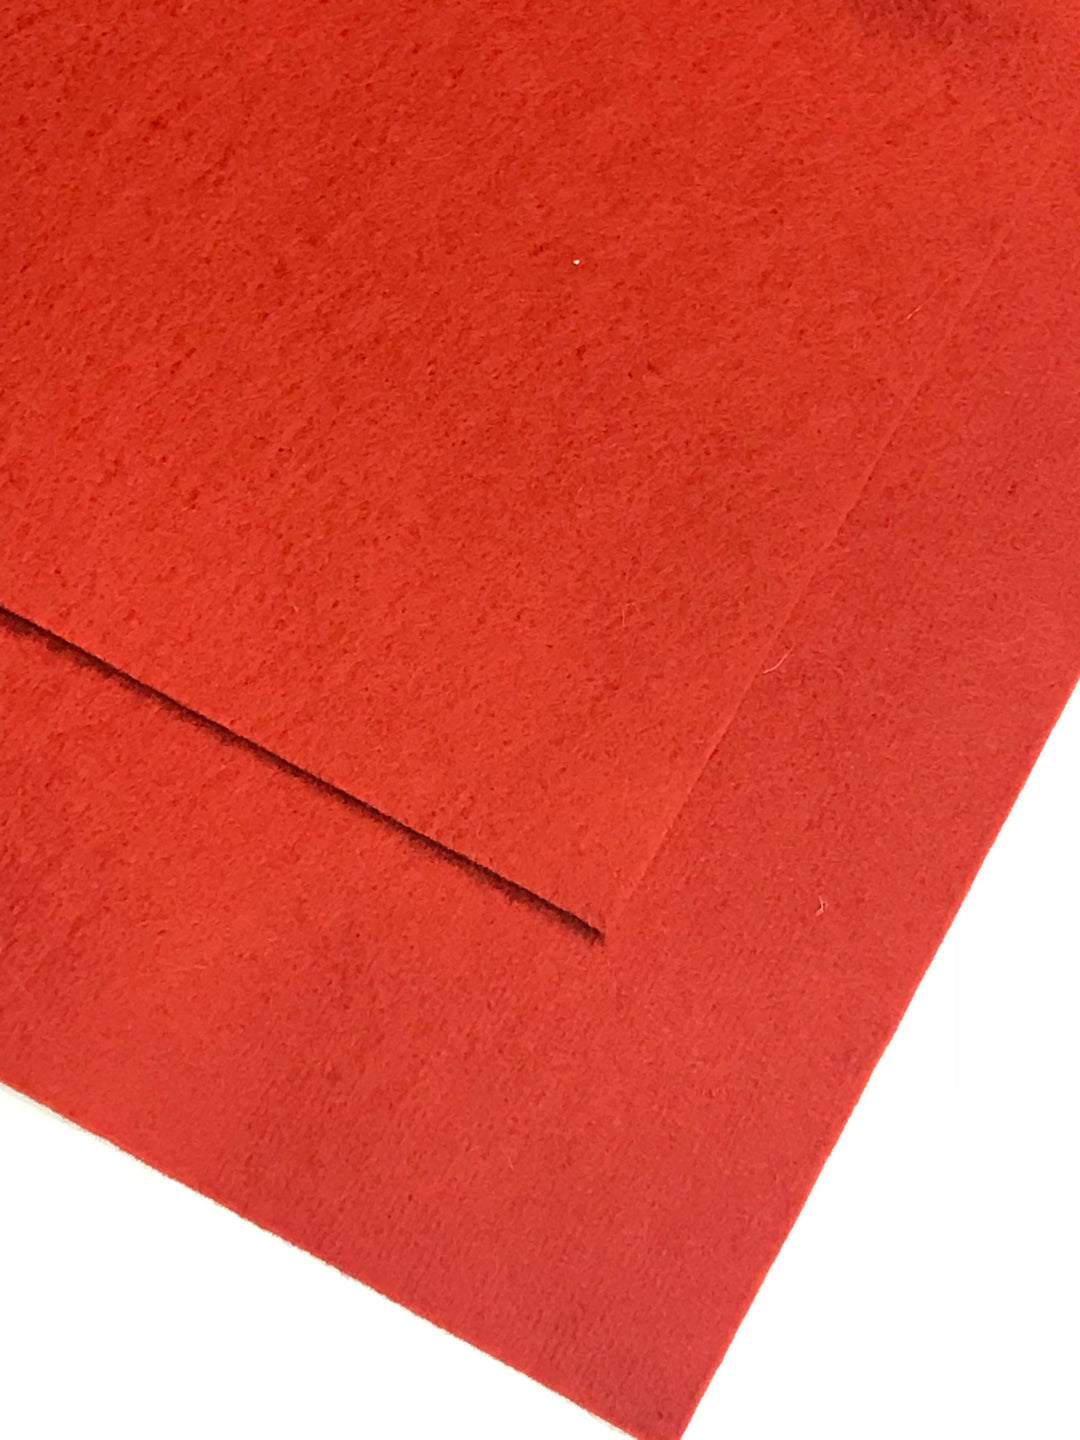 1mm Saffron Merino Wool Felt A4 Sheet - No. 22